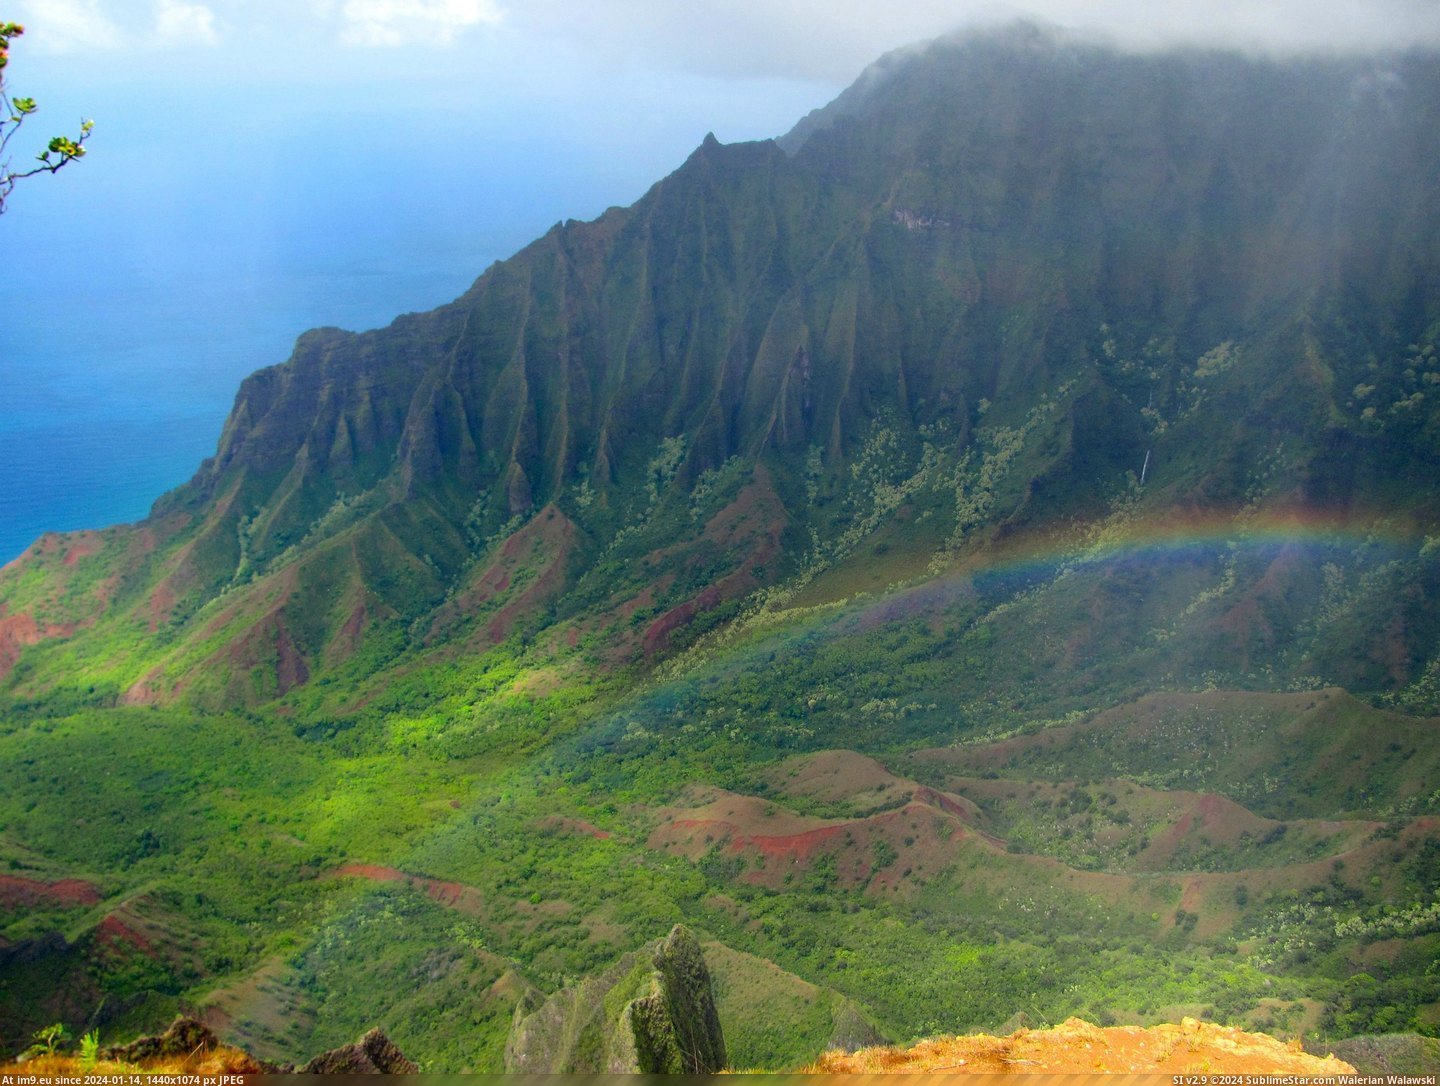 #Valley #Hawaii #Kauai #Kalalau #Trail #Ridge [Earthporn] Kalalau Valley from the Kalepa Ridge Trail - Kauai, Hawaii [OC] [3468 x 2736] Pic. (Изображение из альбом My r/EARTHPORN favs))